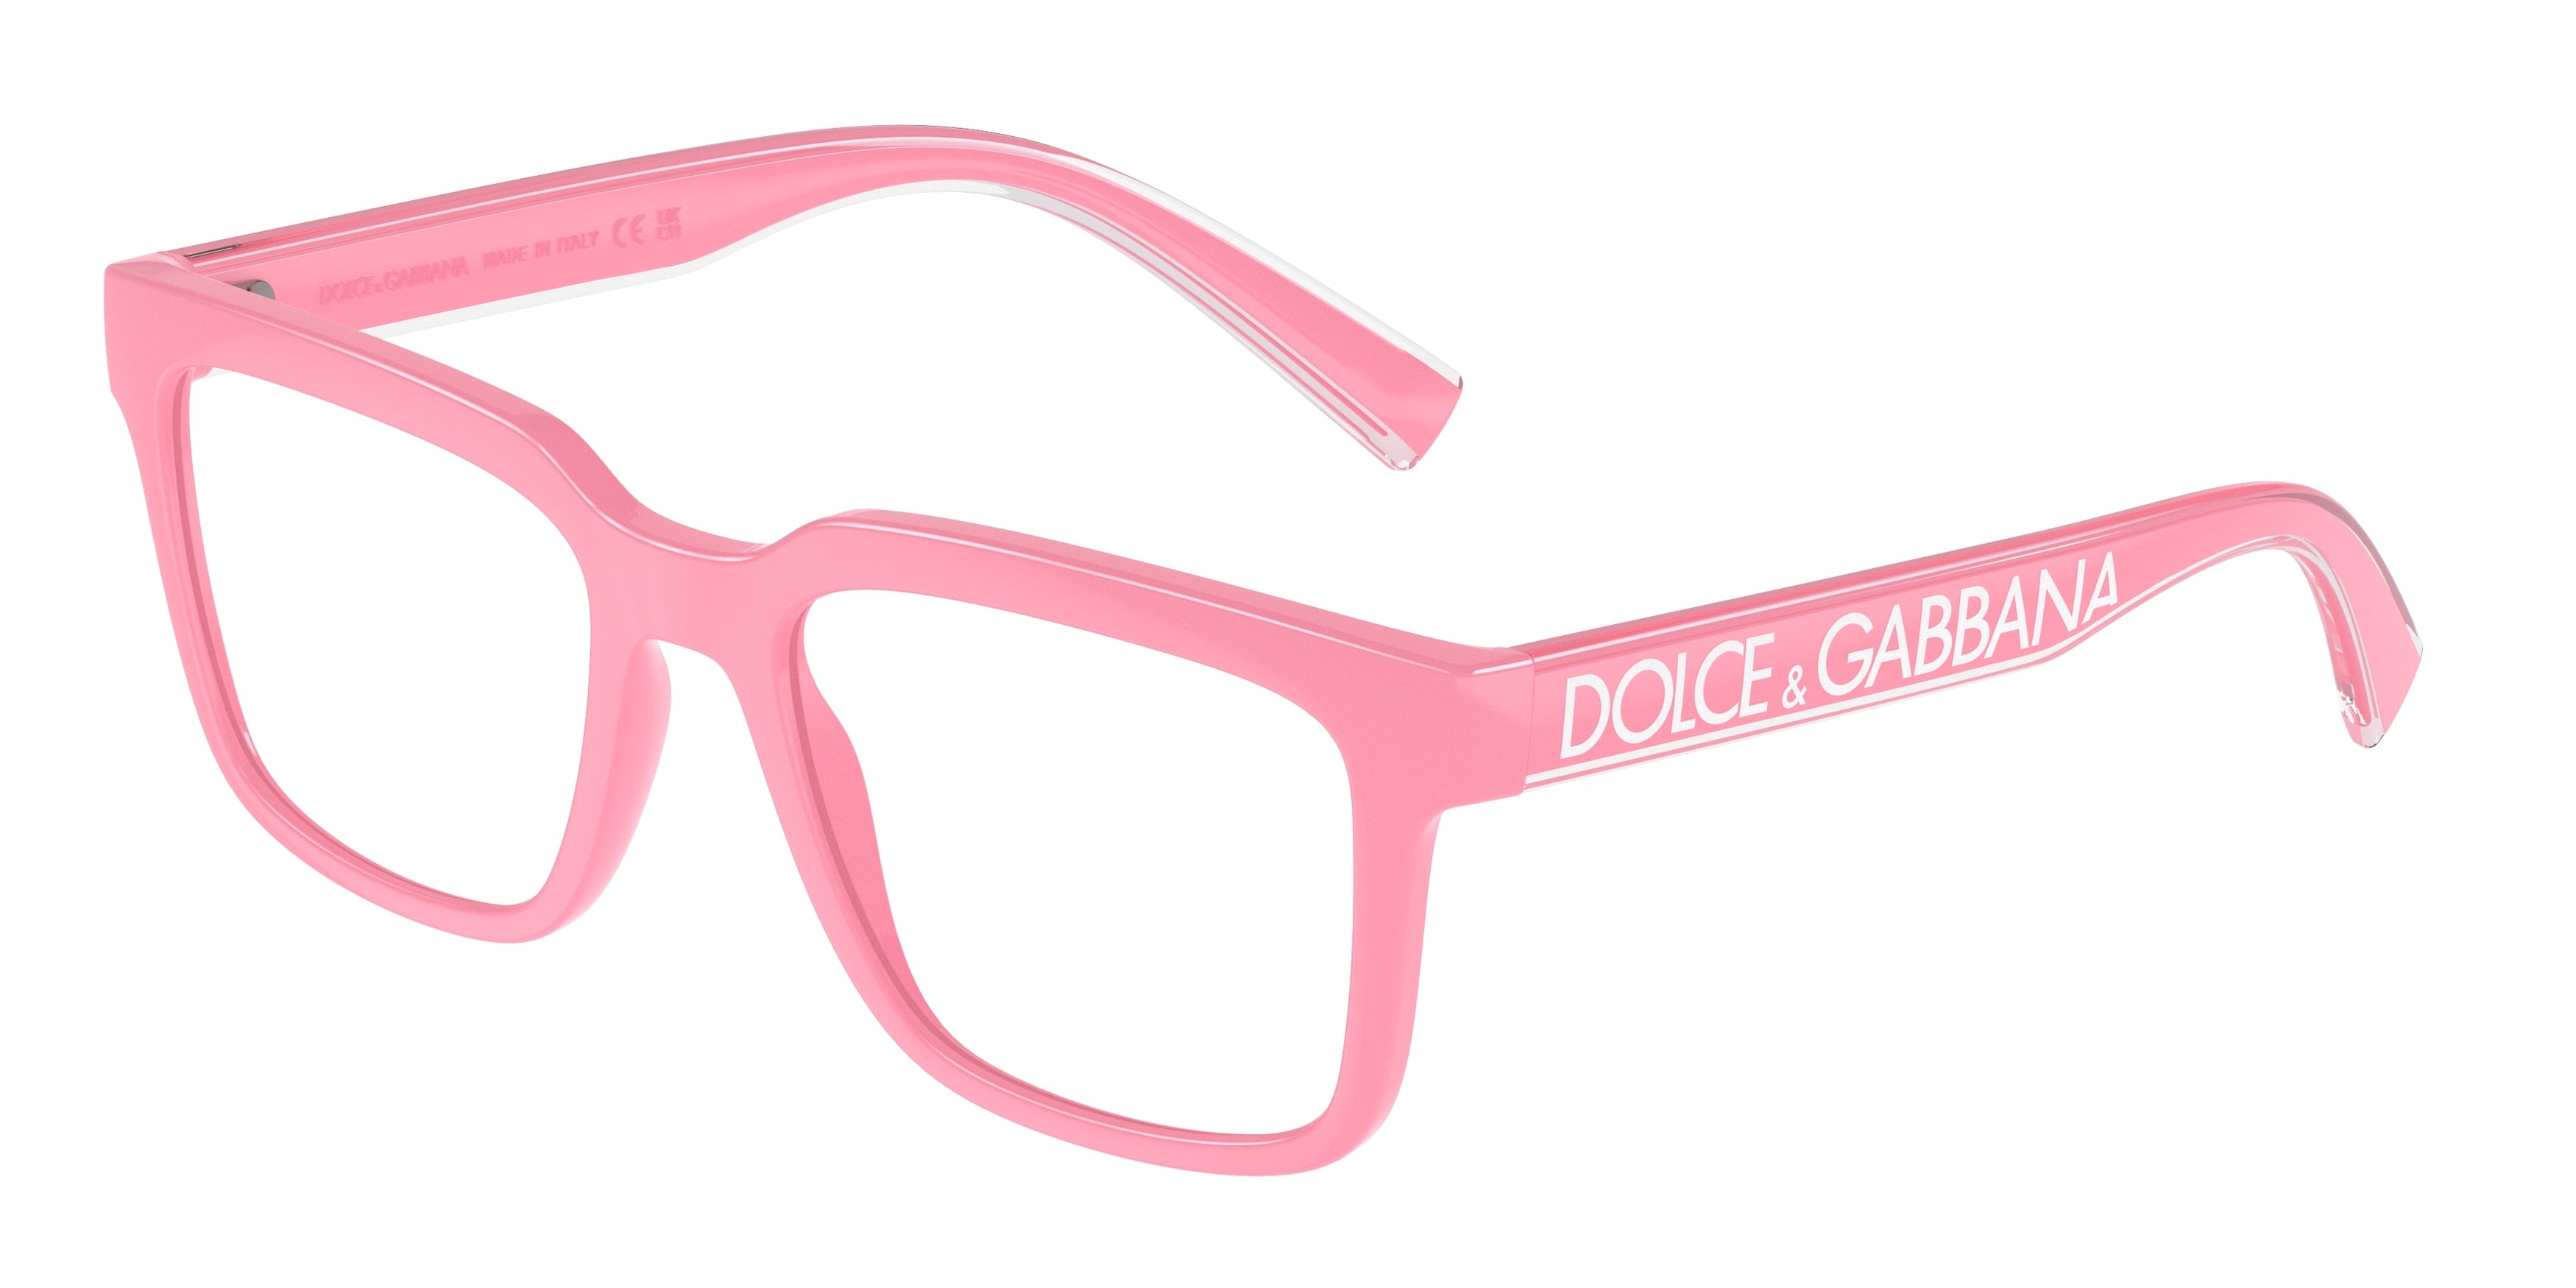 DOLCE & GABBANA DG5101 Square Eyeglasses  3262-Pink 52-145-18 - Color Map Pink